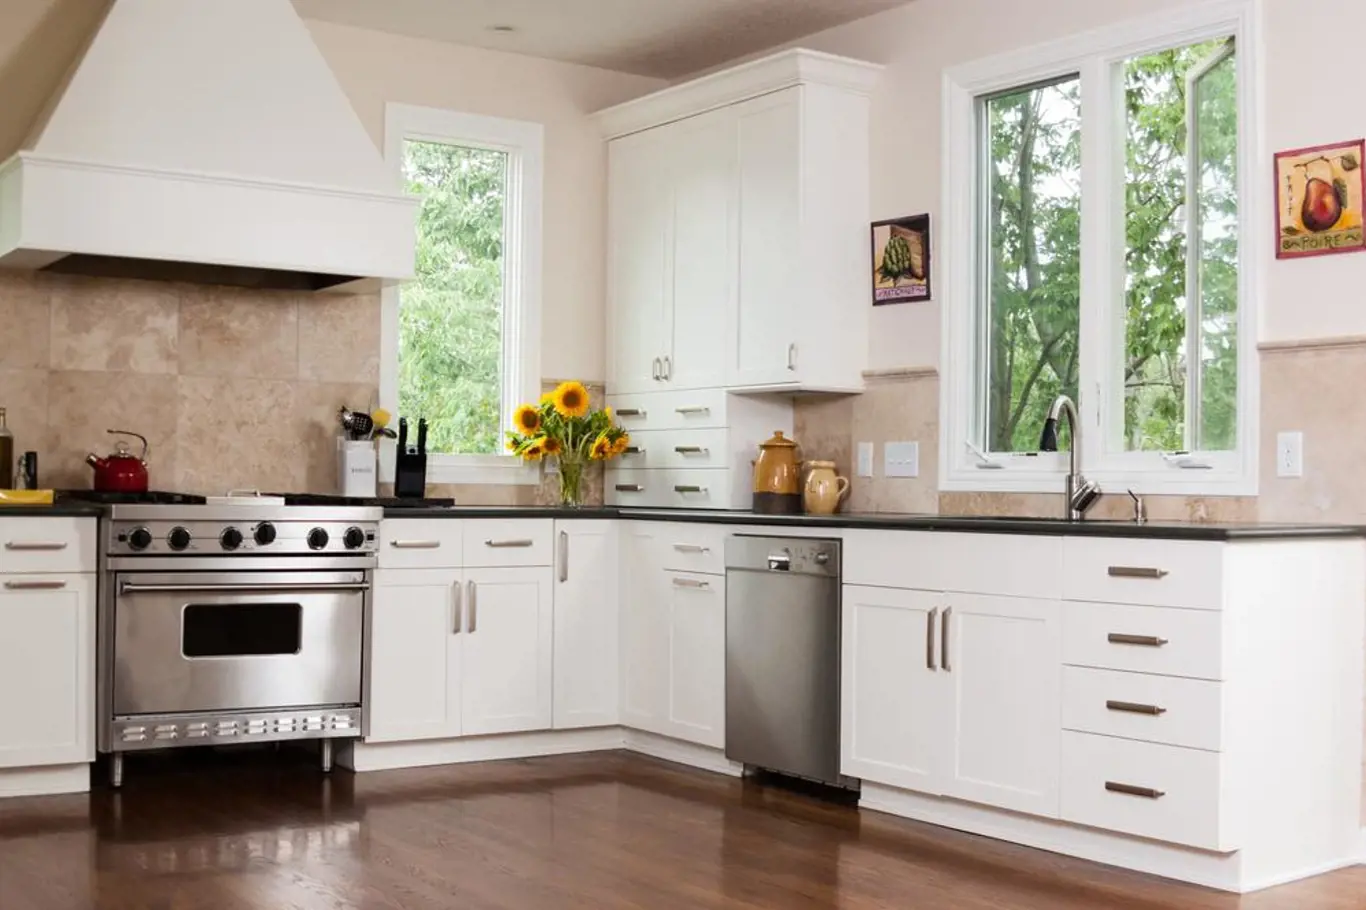 Jak správně čistit domácí spotřebiče v kuchyni?